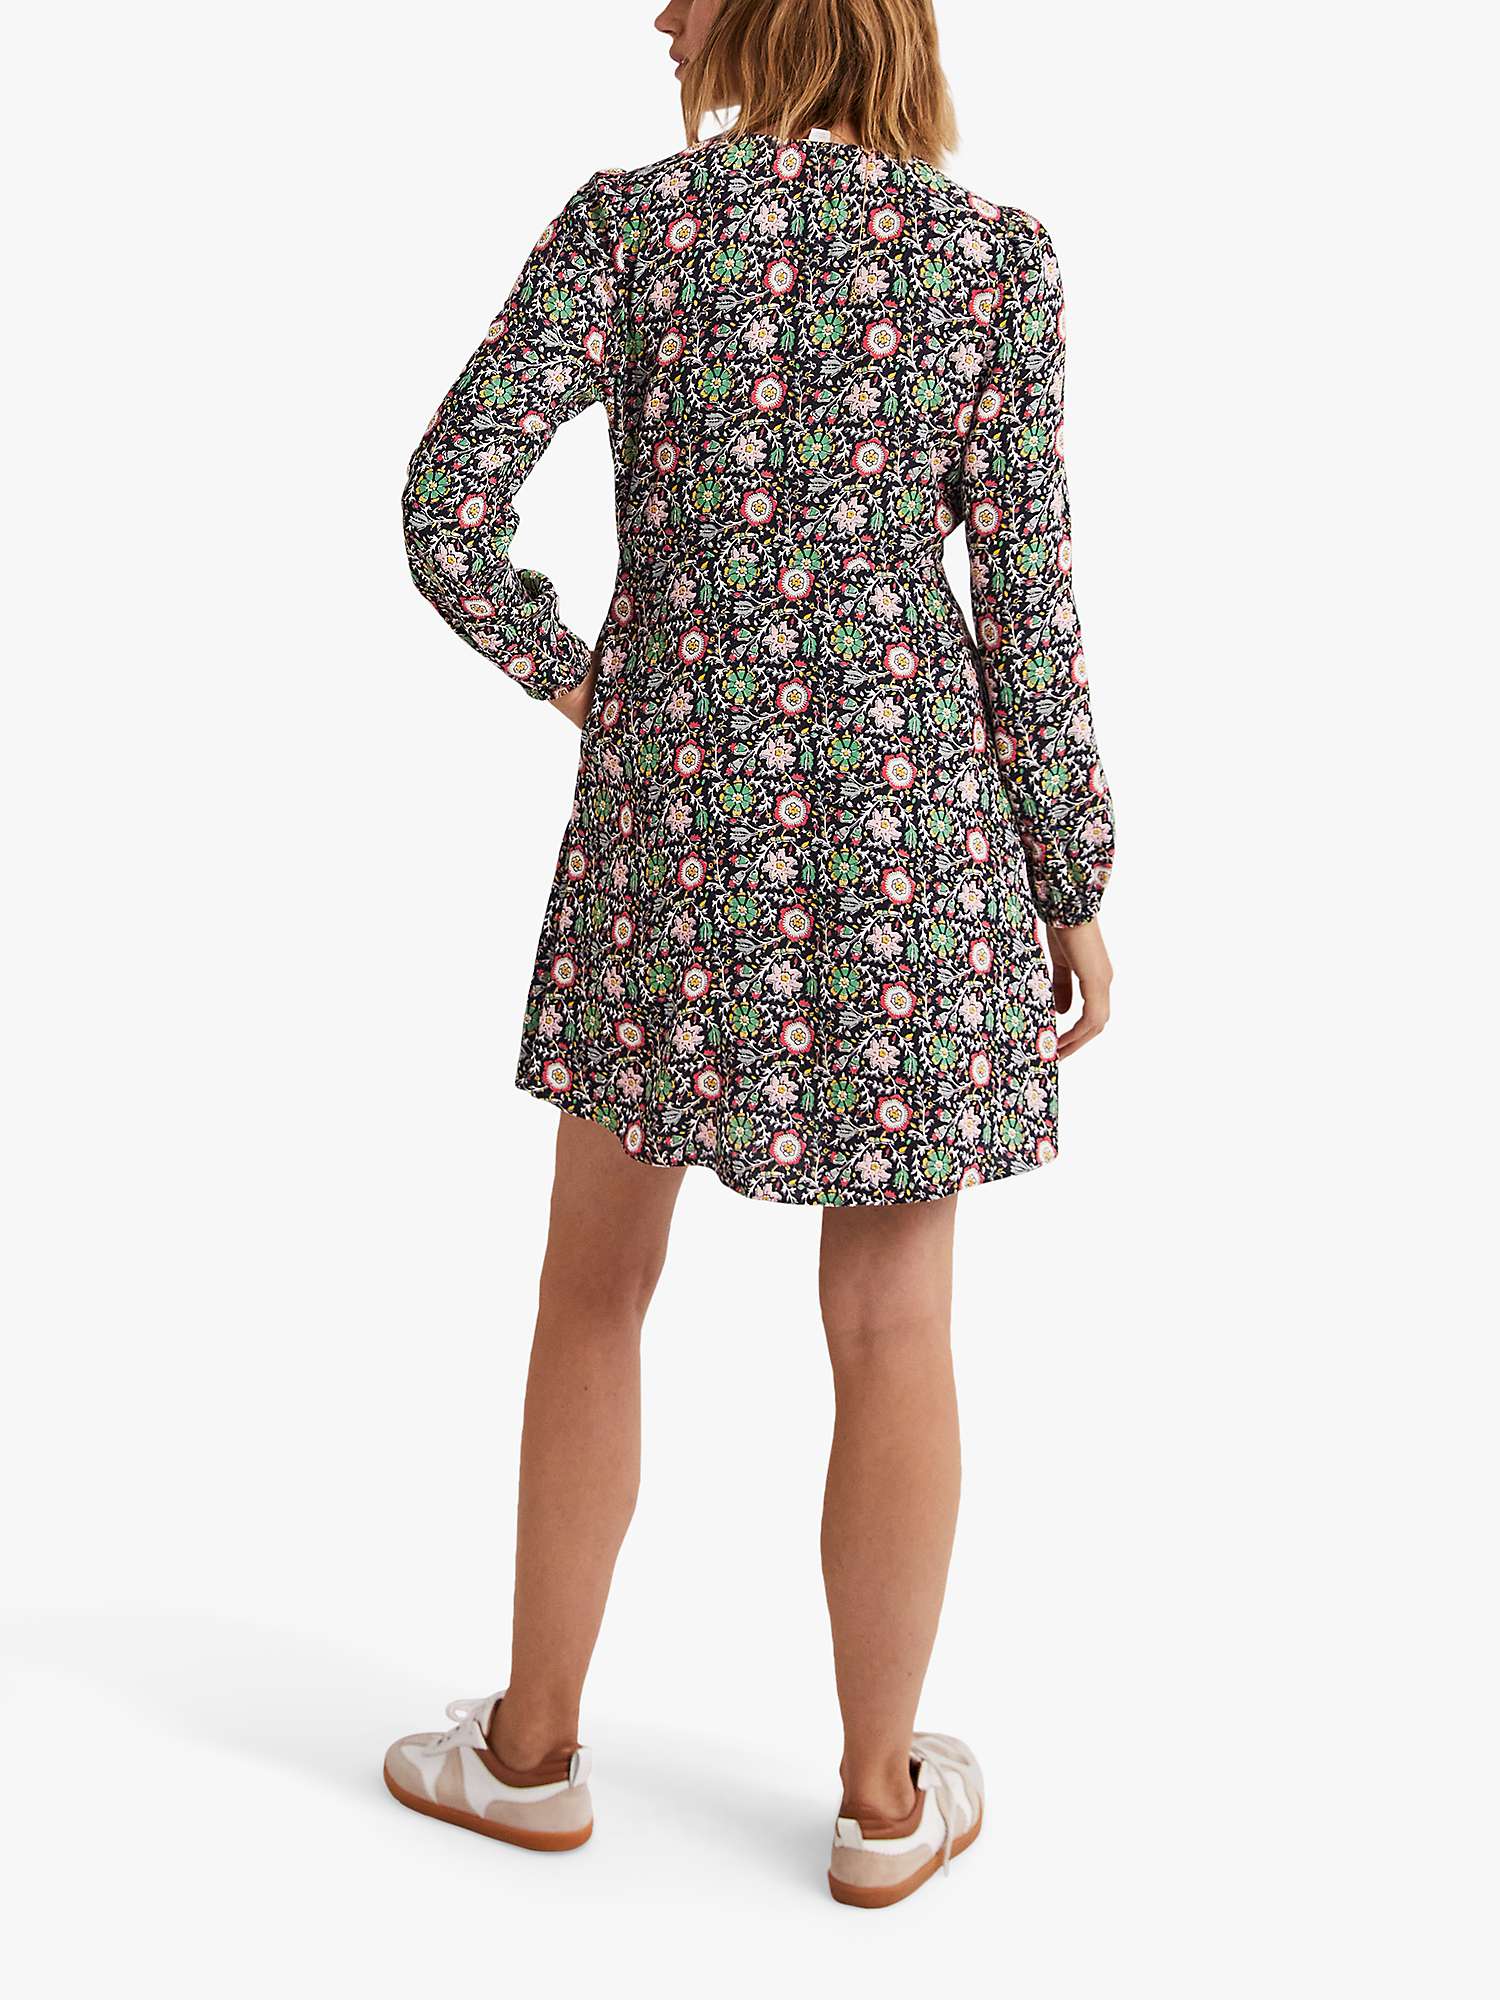 Boden Floral Print V-Neck Tea Dress, Multi at John Lewis & Partners